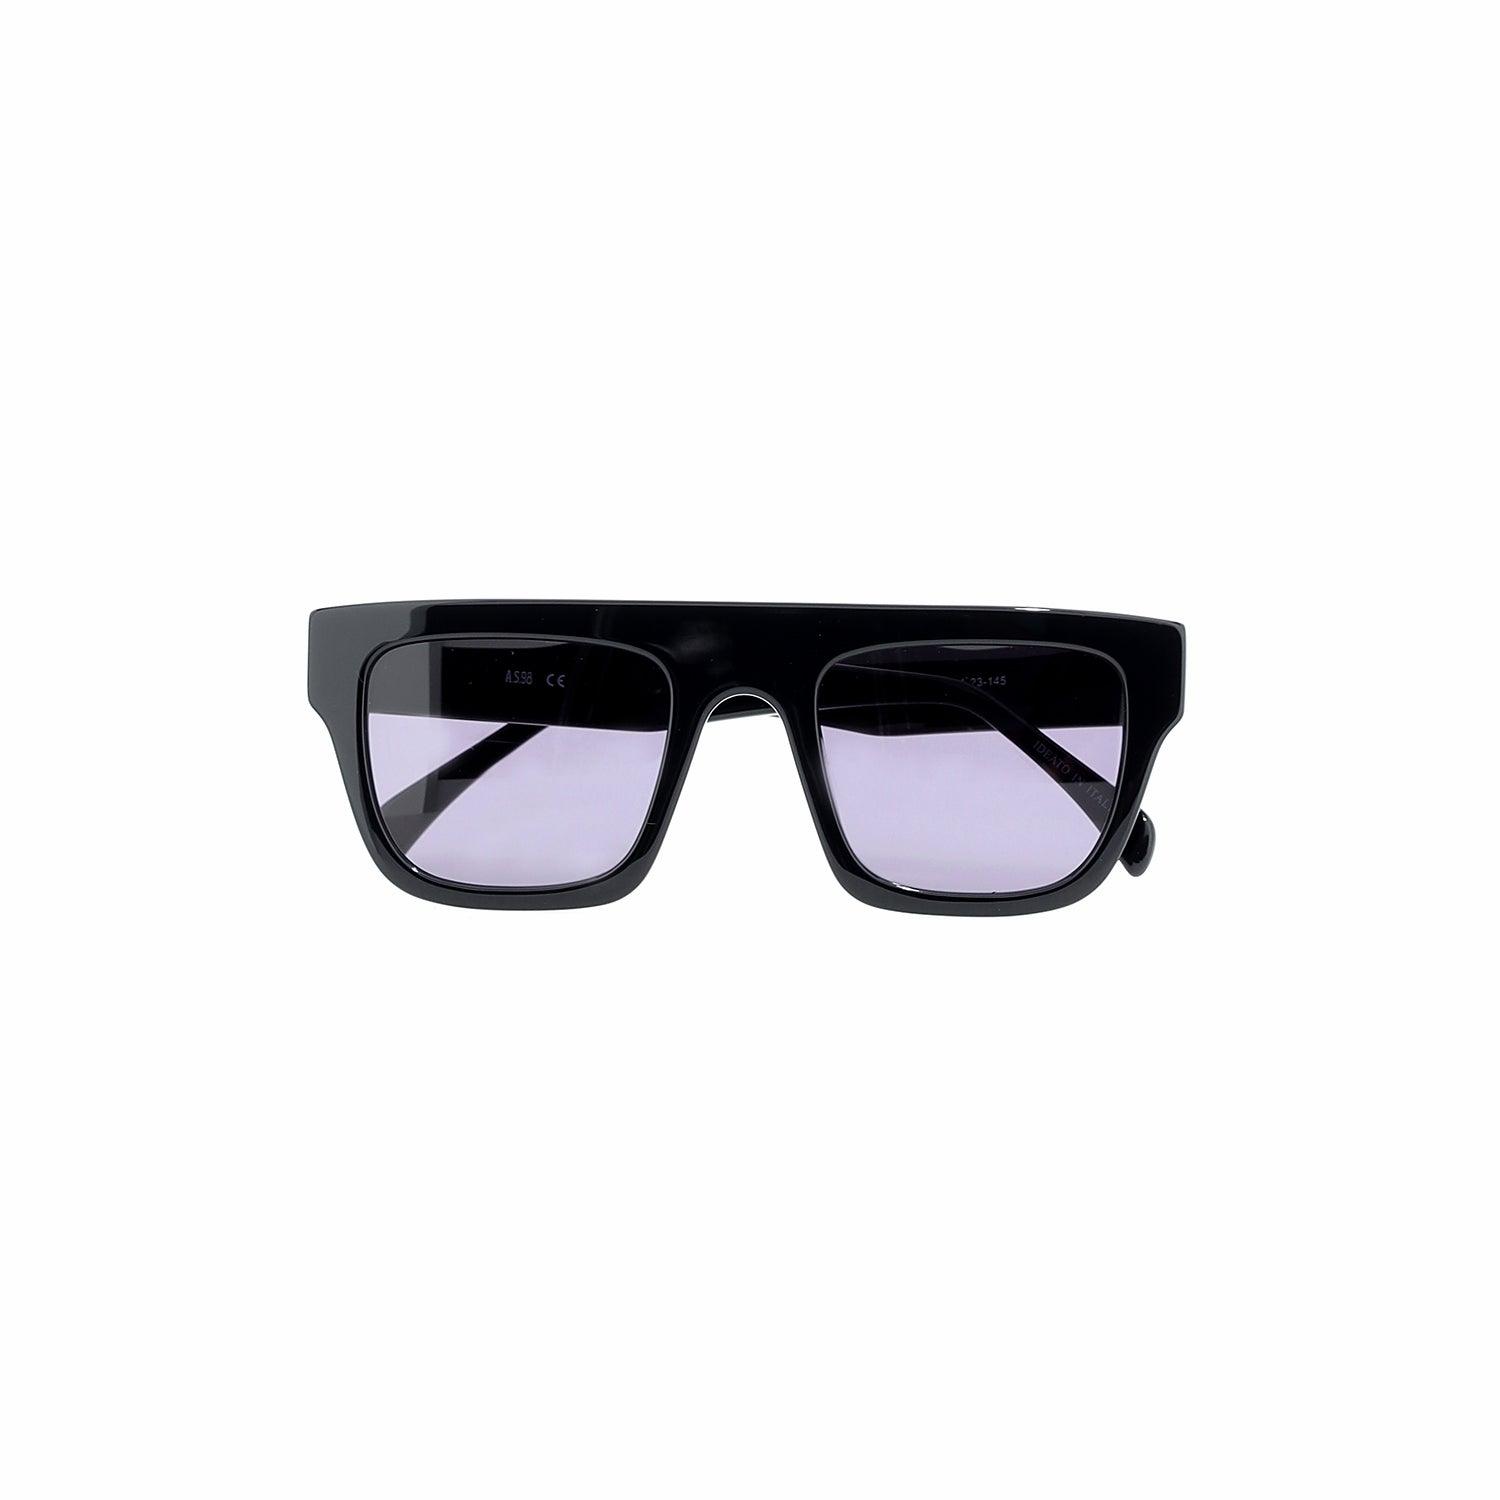 A.S.98 Sunglasses - Dahlia - A.S. 98 - 